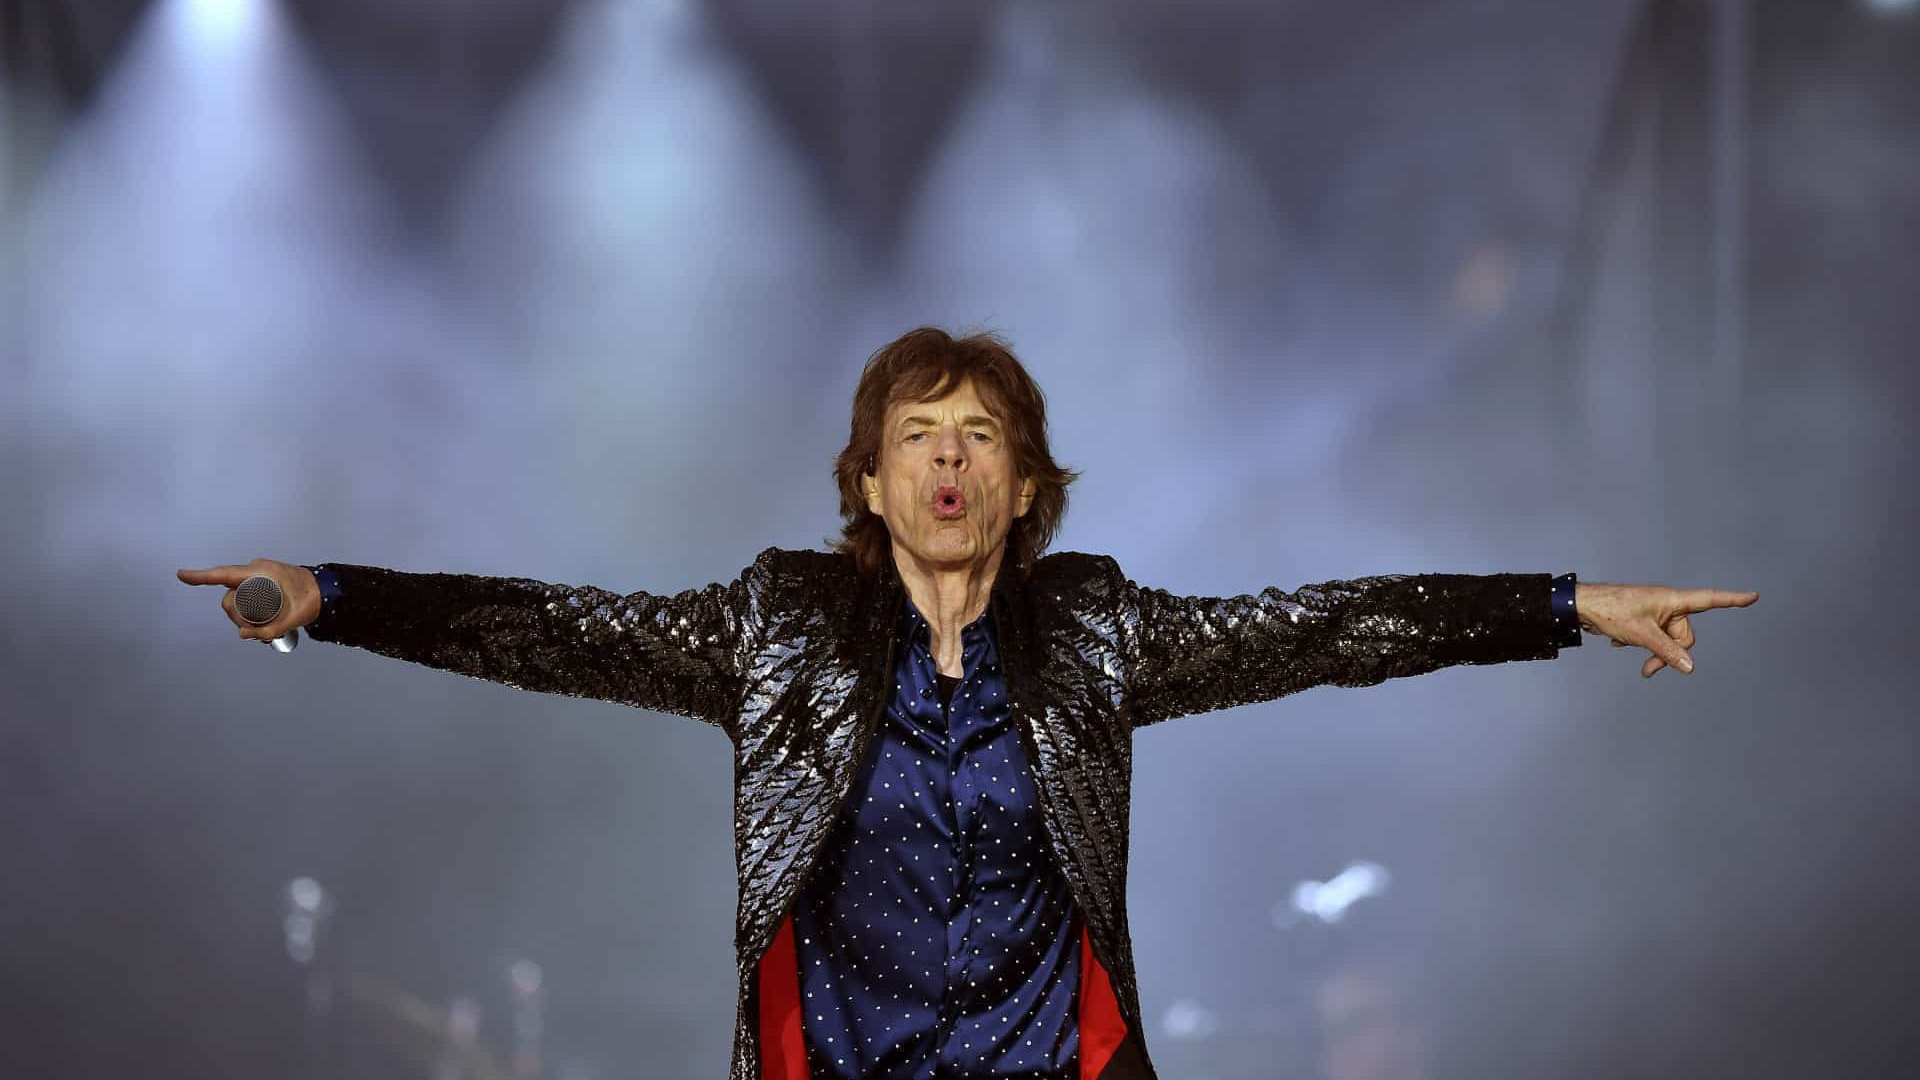 Mick Jagger diz que não pretende deixar herança de R$ 2,5 bilhões aos filhos e cogita caridade